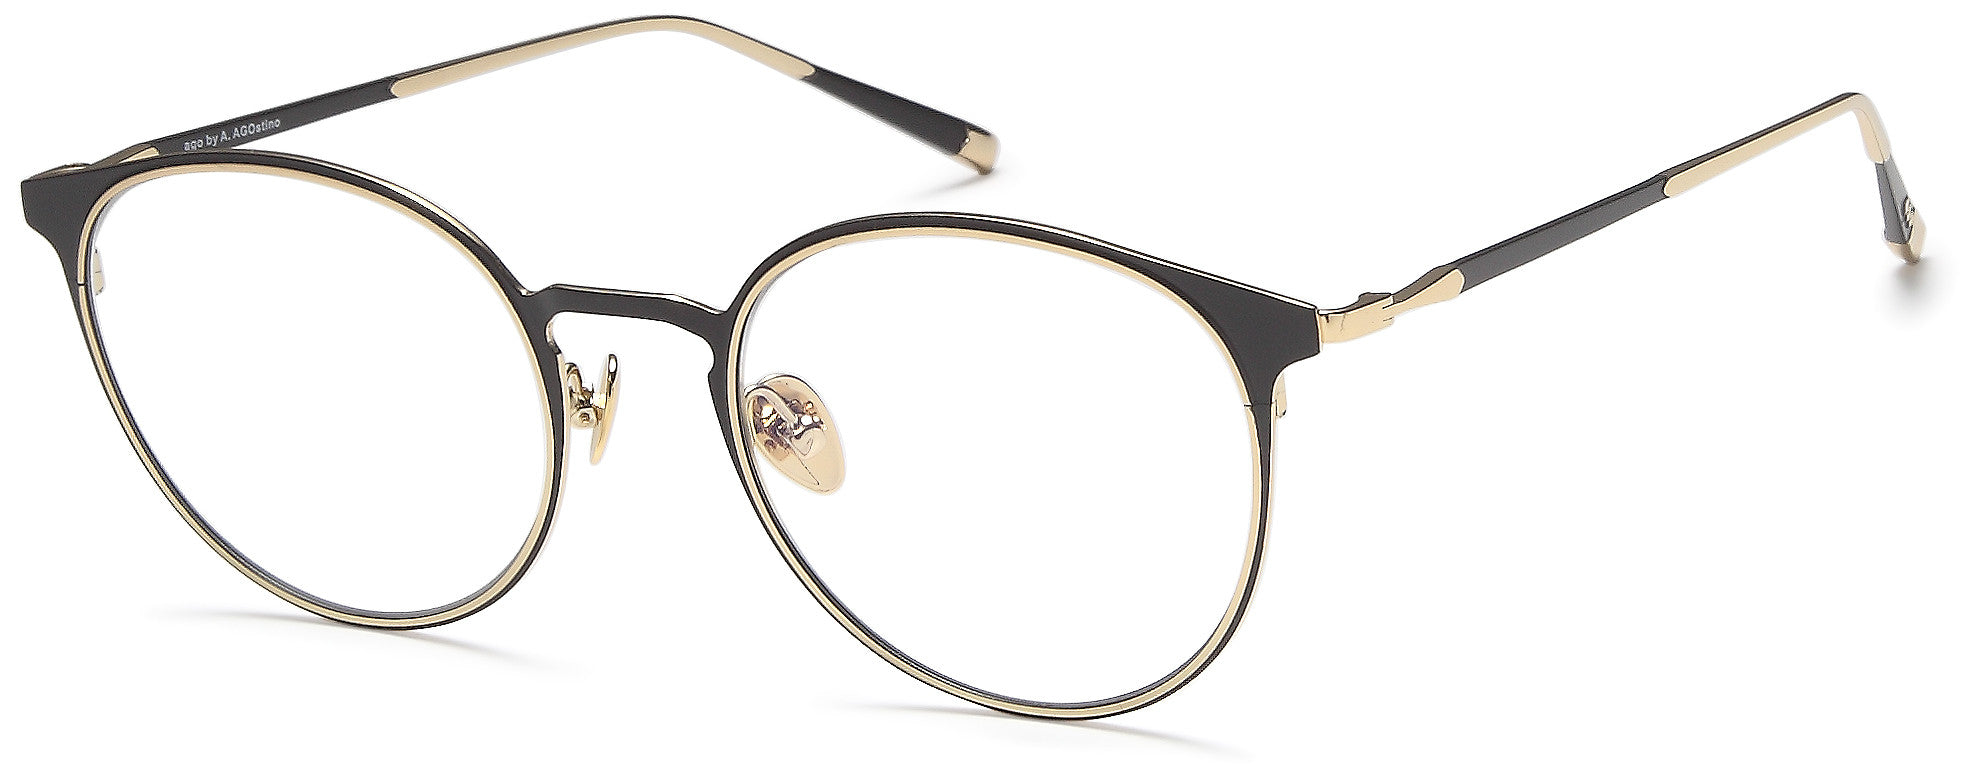 AGO Eyeglasses MF90009